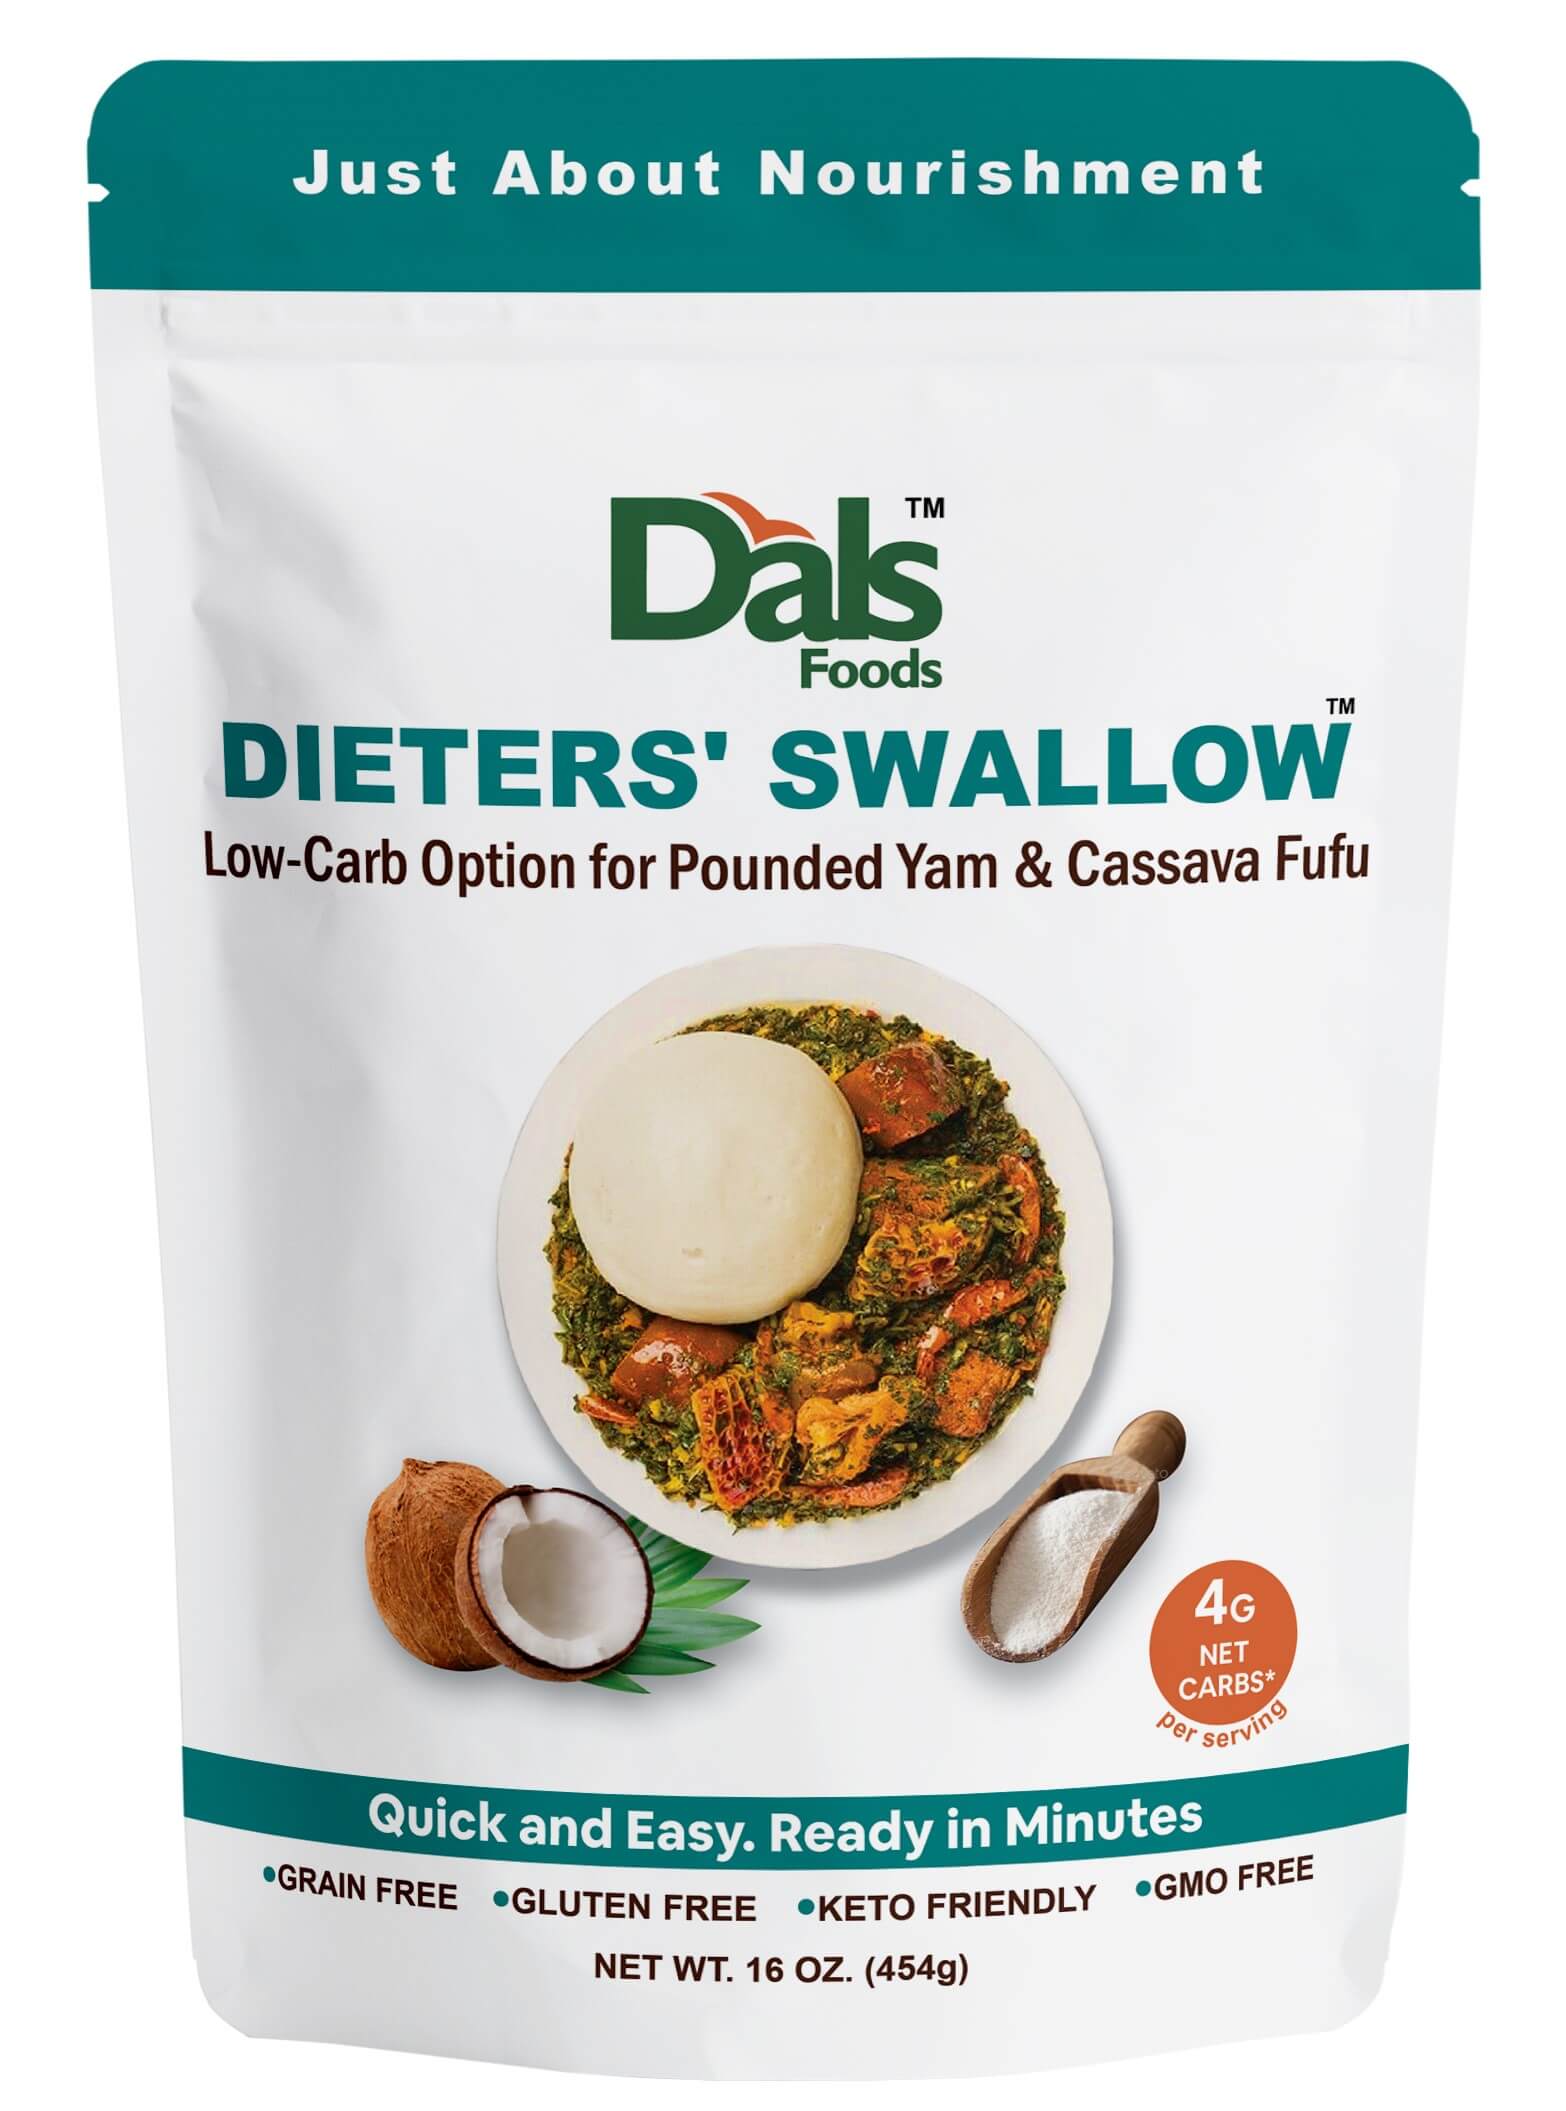 dieters’ swallow